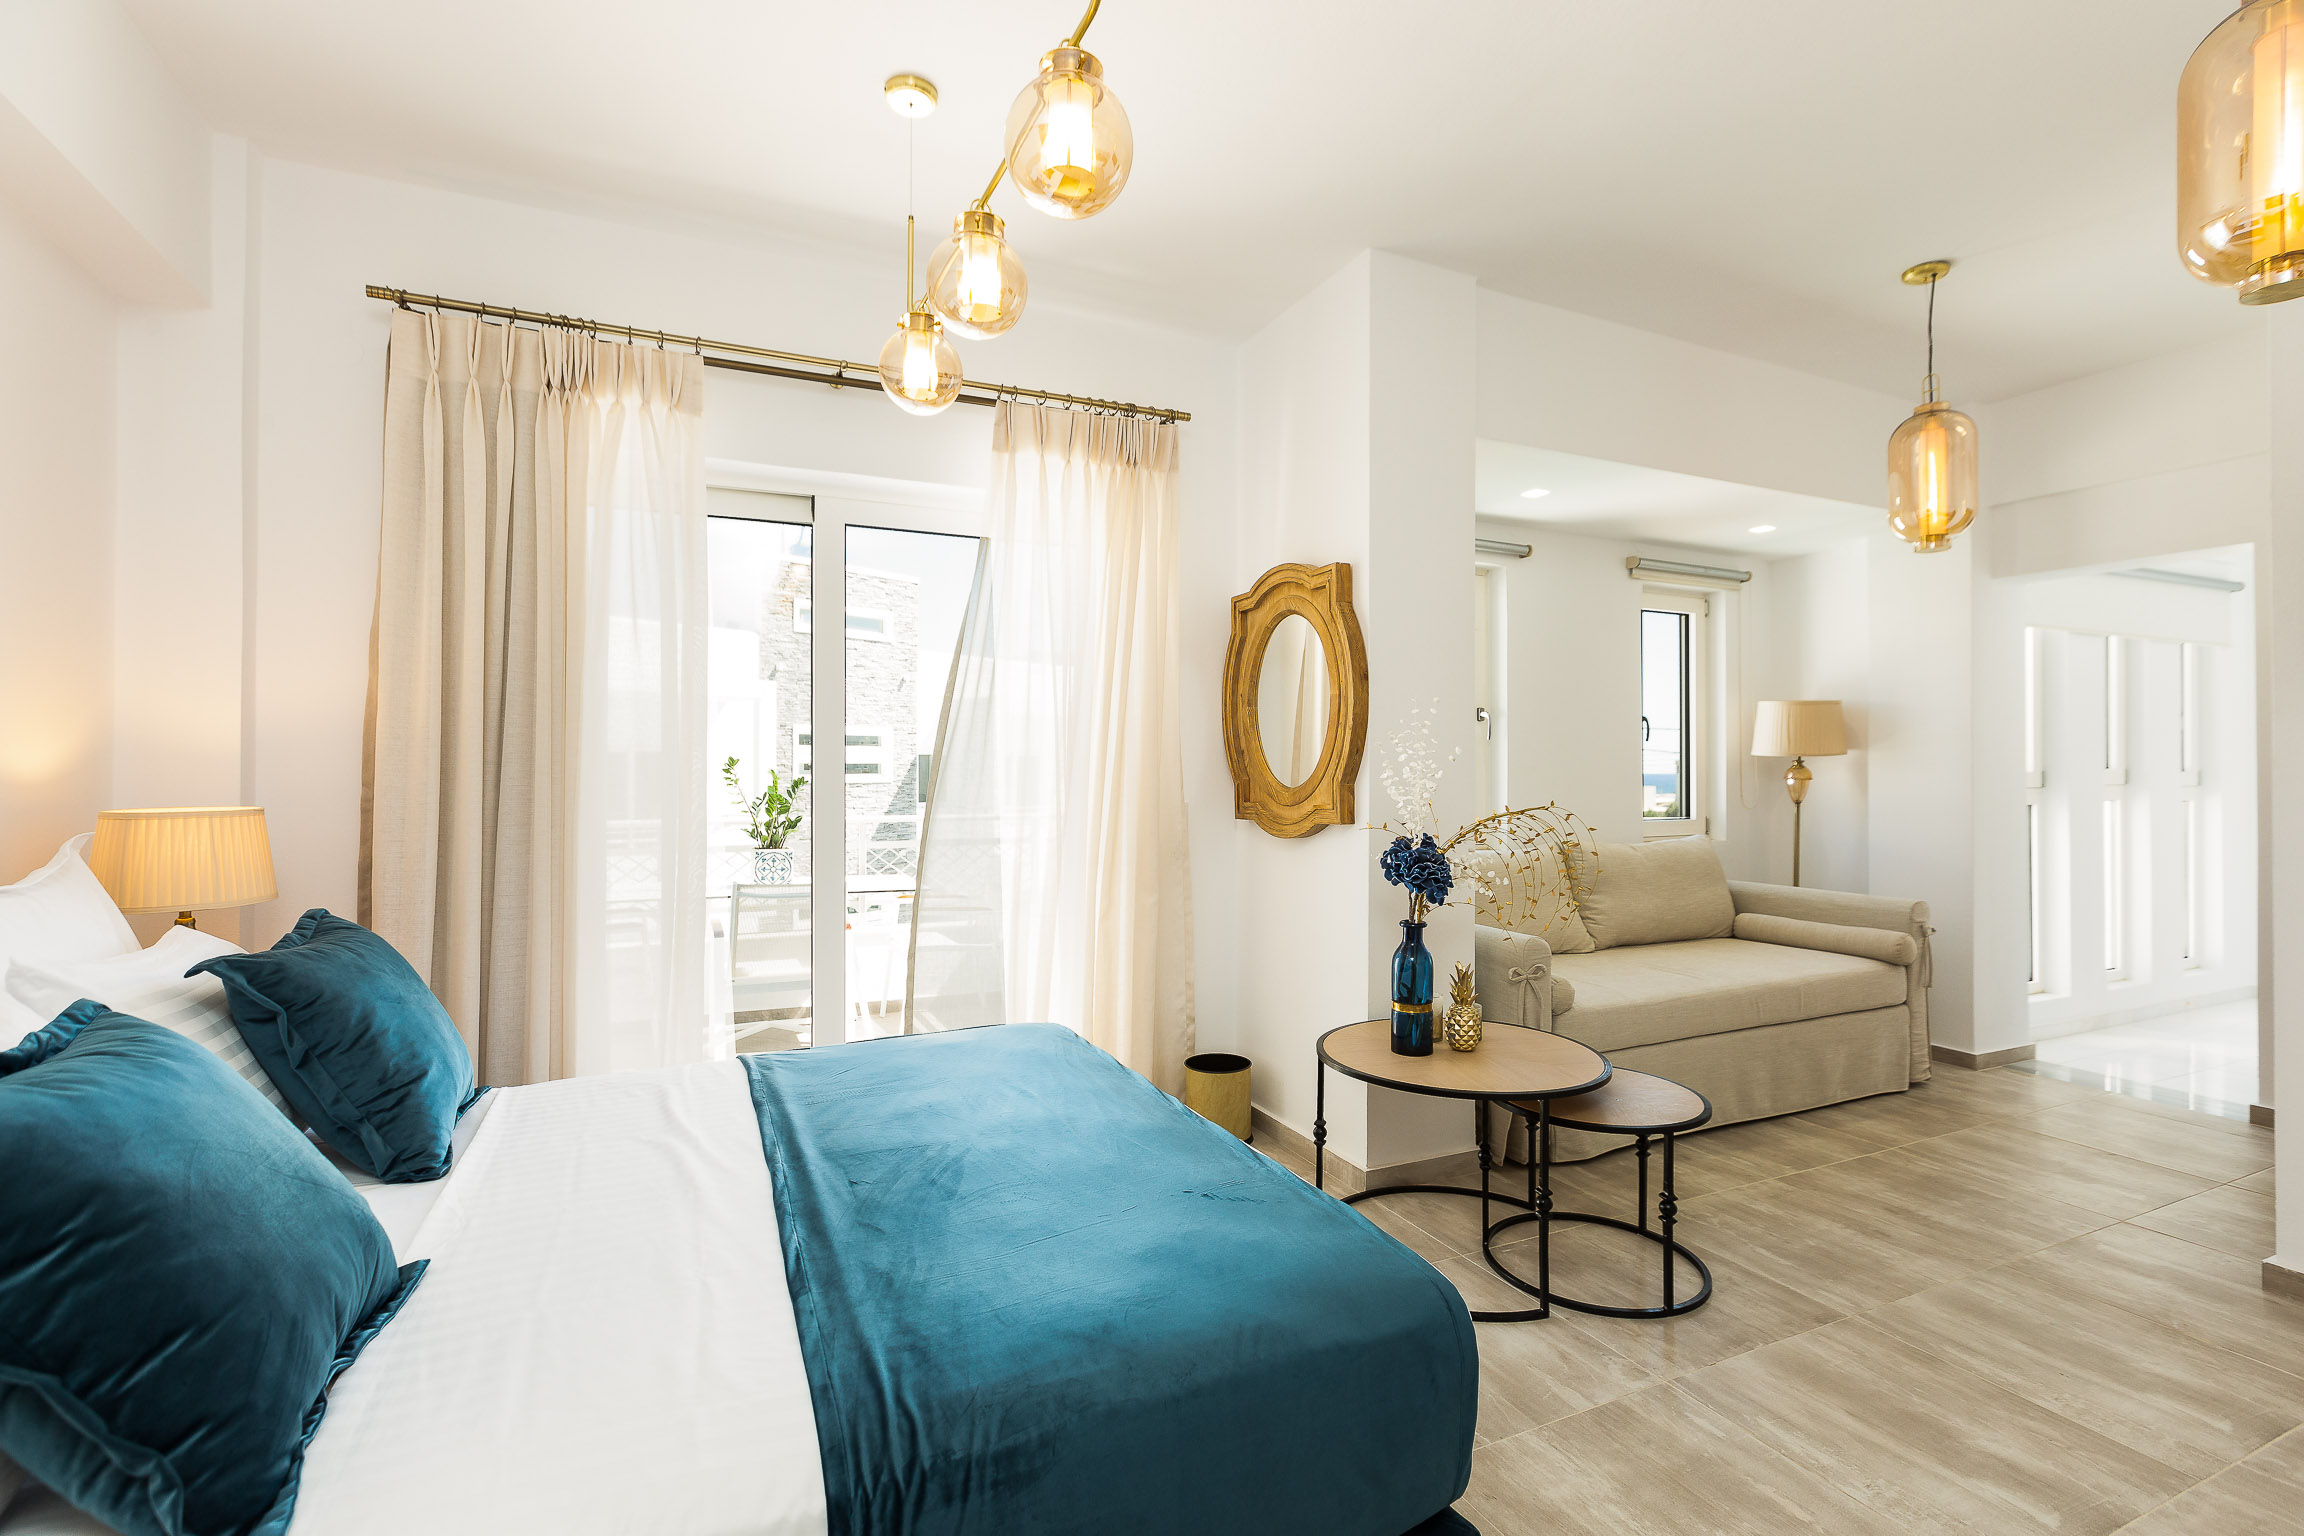 Stellar Mediterranean Hotels In Greece Corfu Mykonos Crete